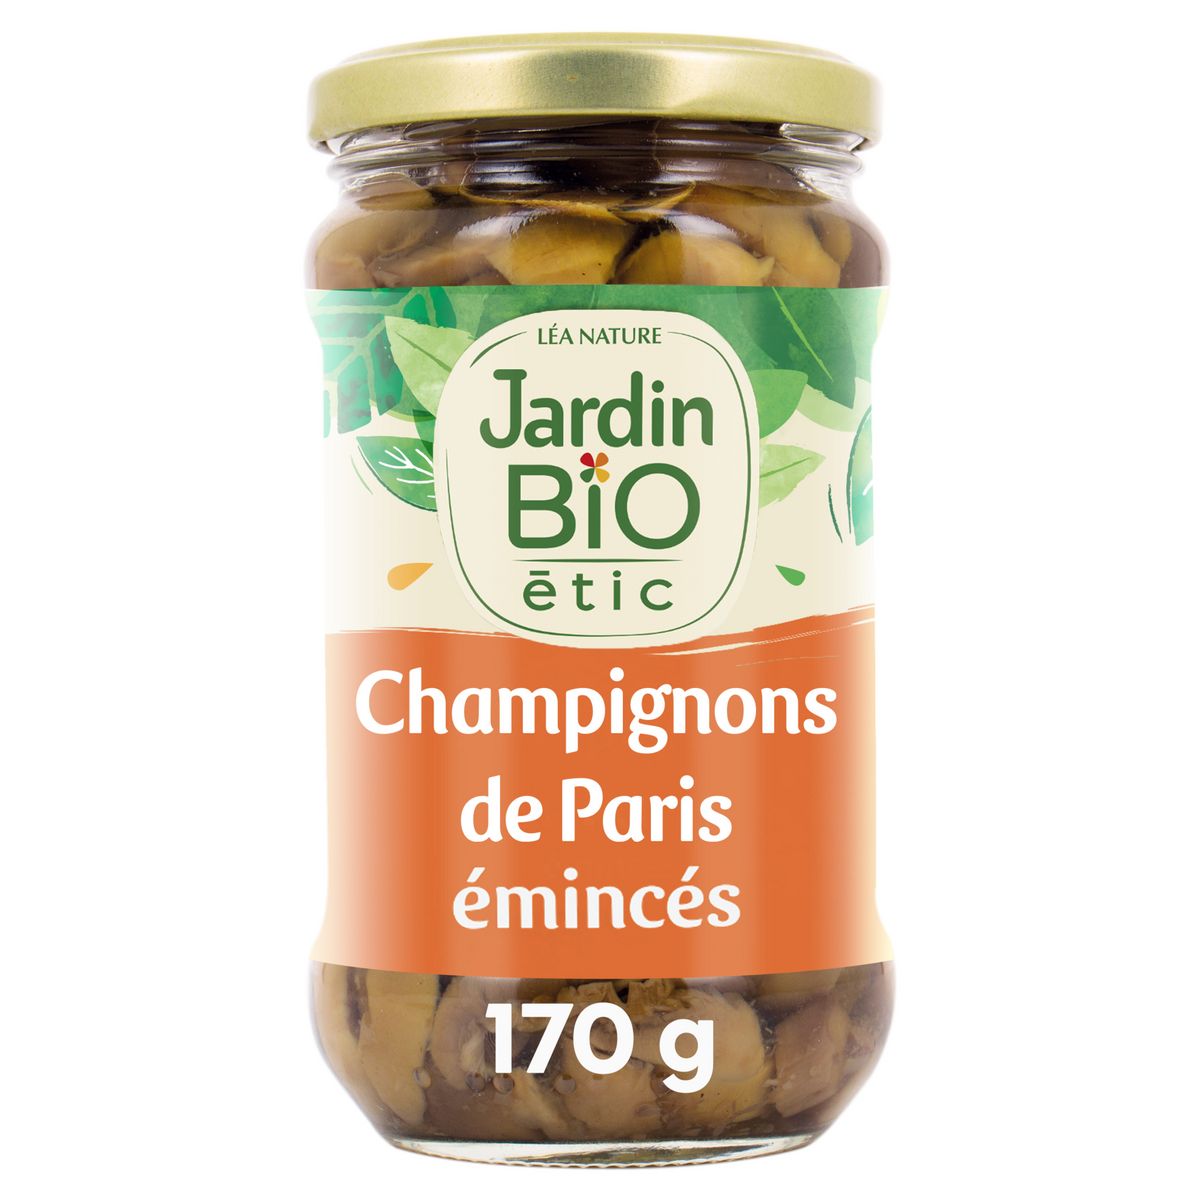 JARDIN BIO ETIC Champignons de Paris émincés en bocal 280g